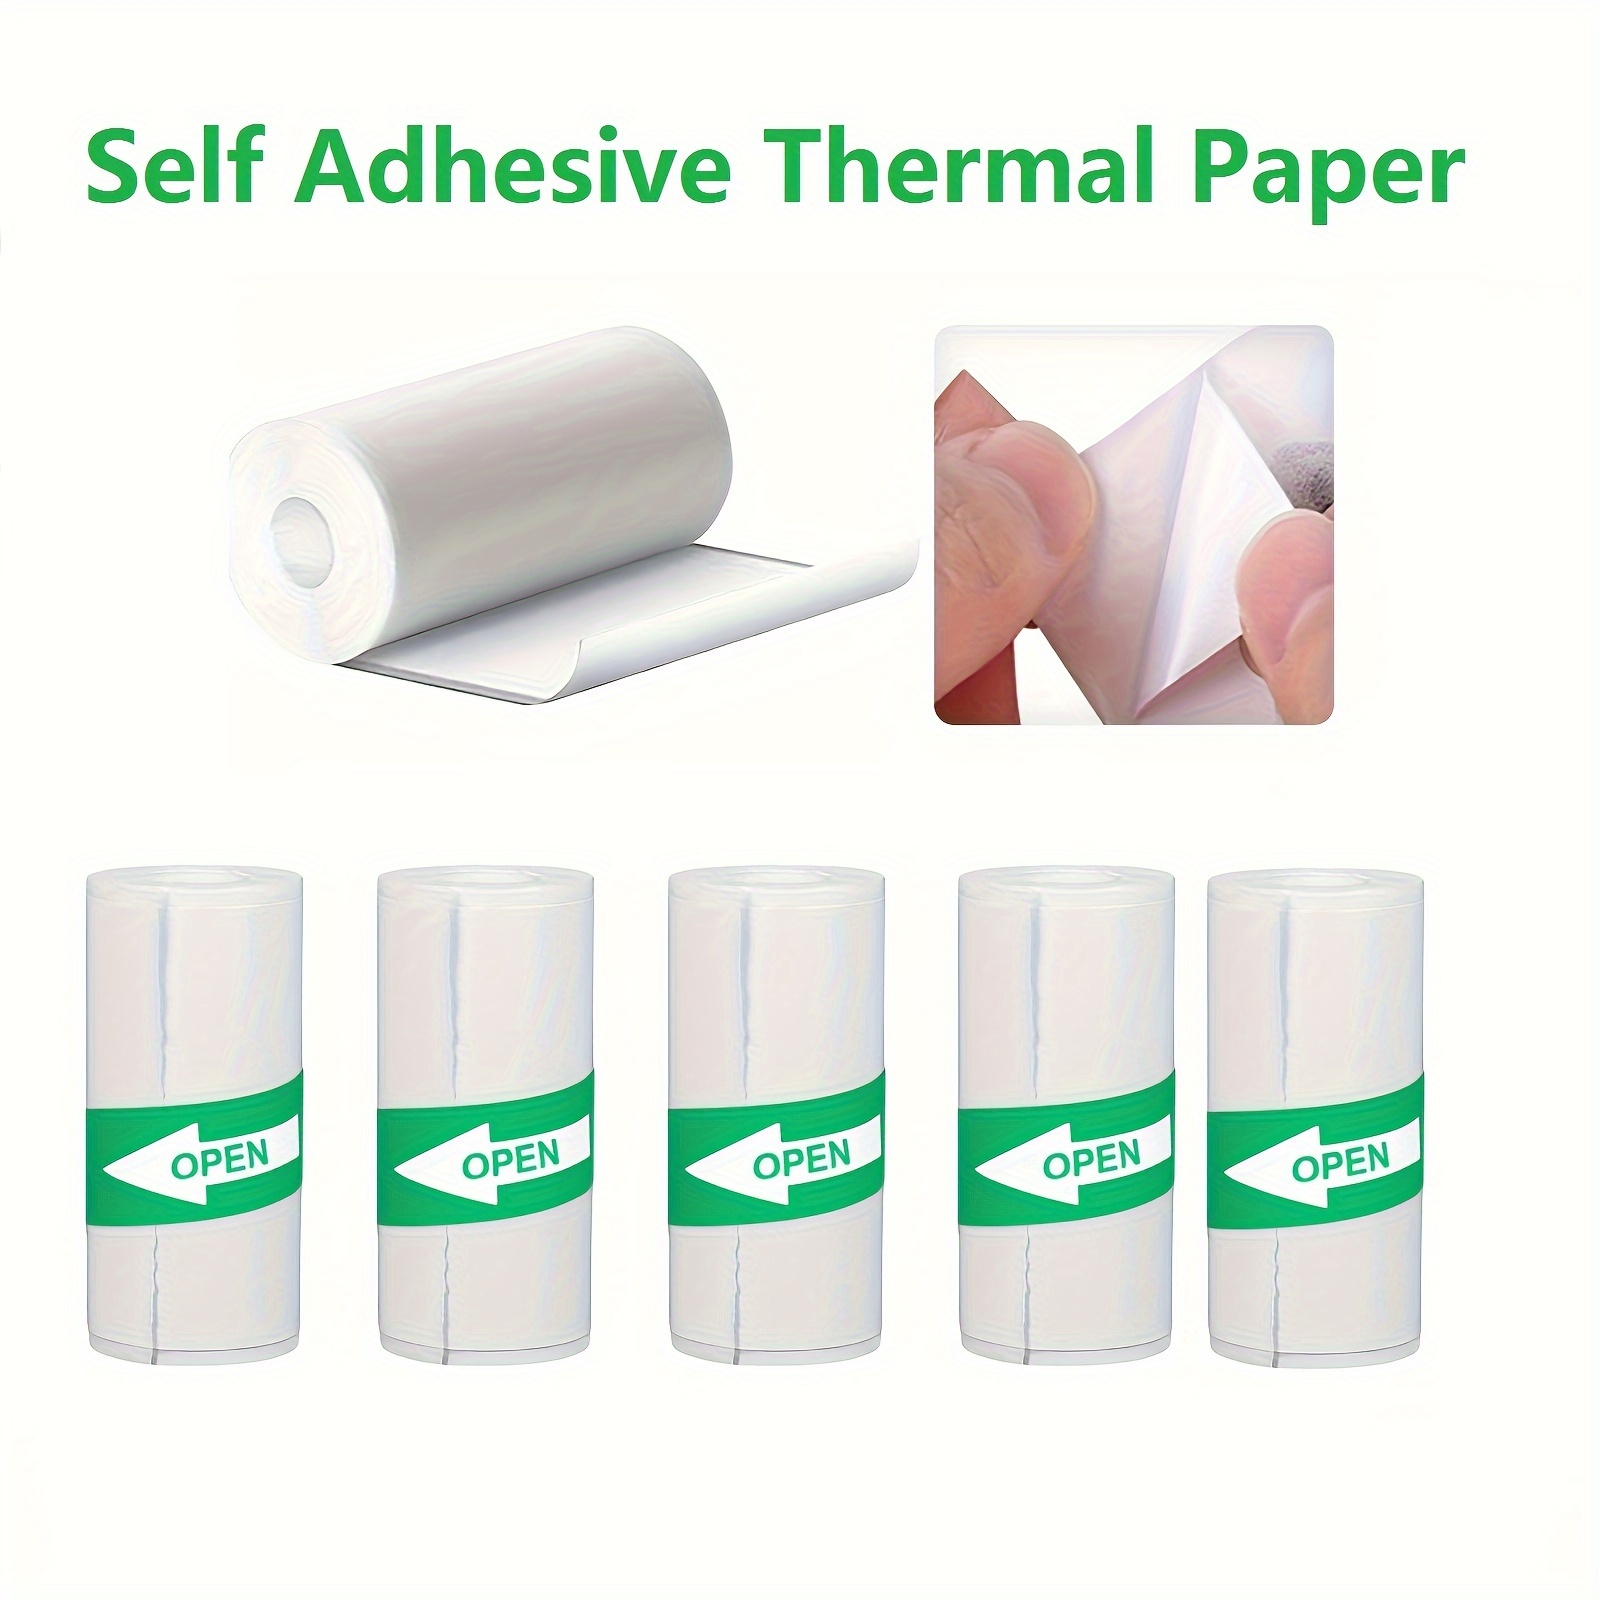 Thermal Mini Printer Paper Colorful Roll And Self adhesive - Temu